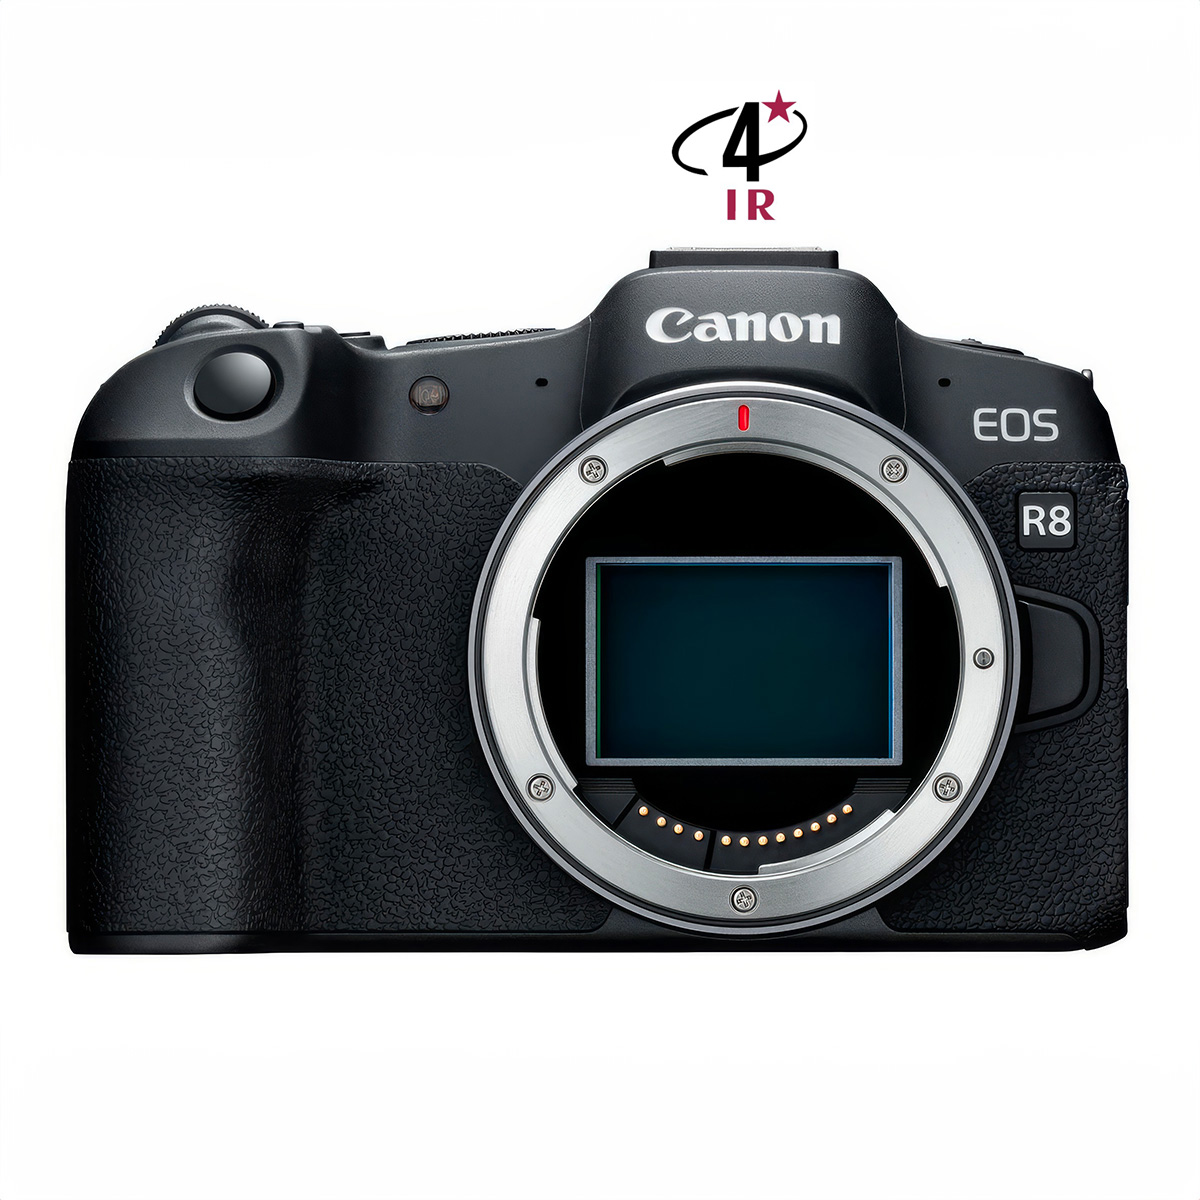 Hybride Canon EOS R8 neuf défiltré + refiltré 4'IR